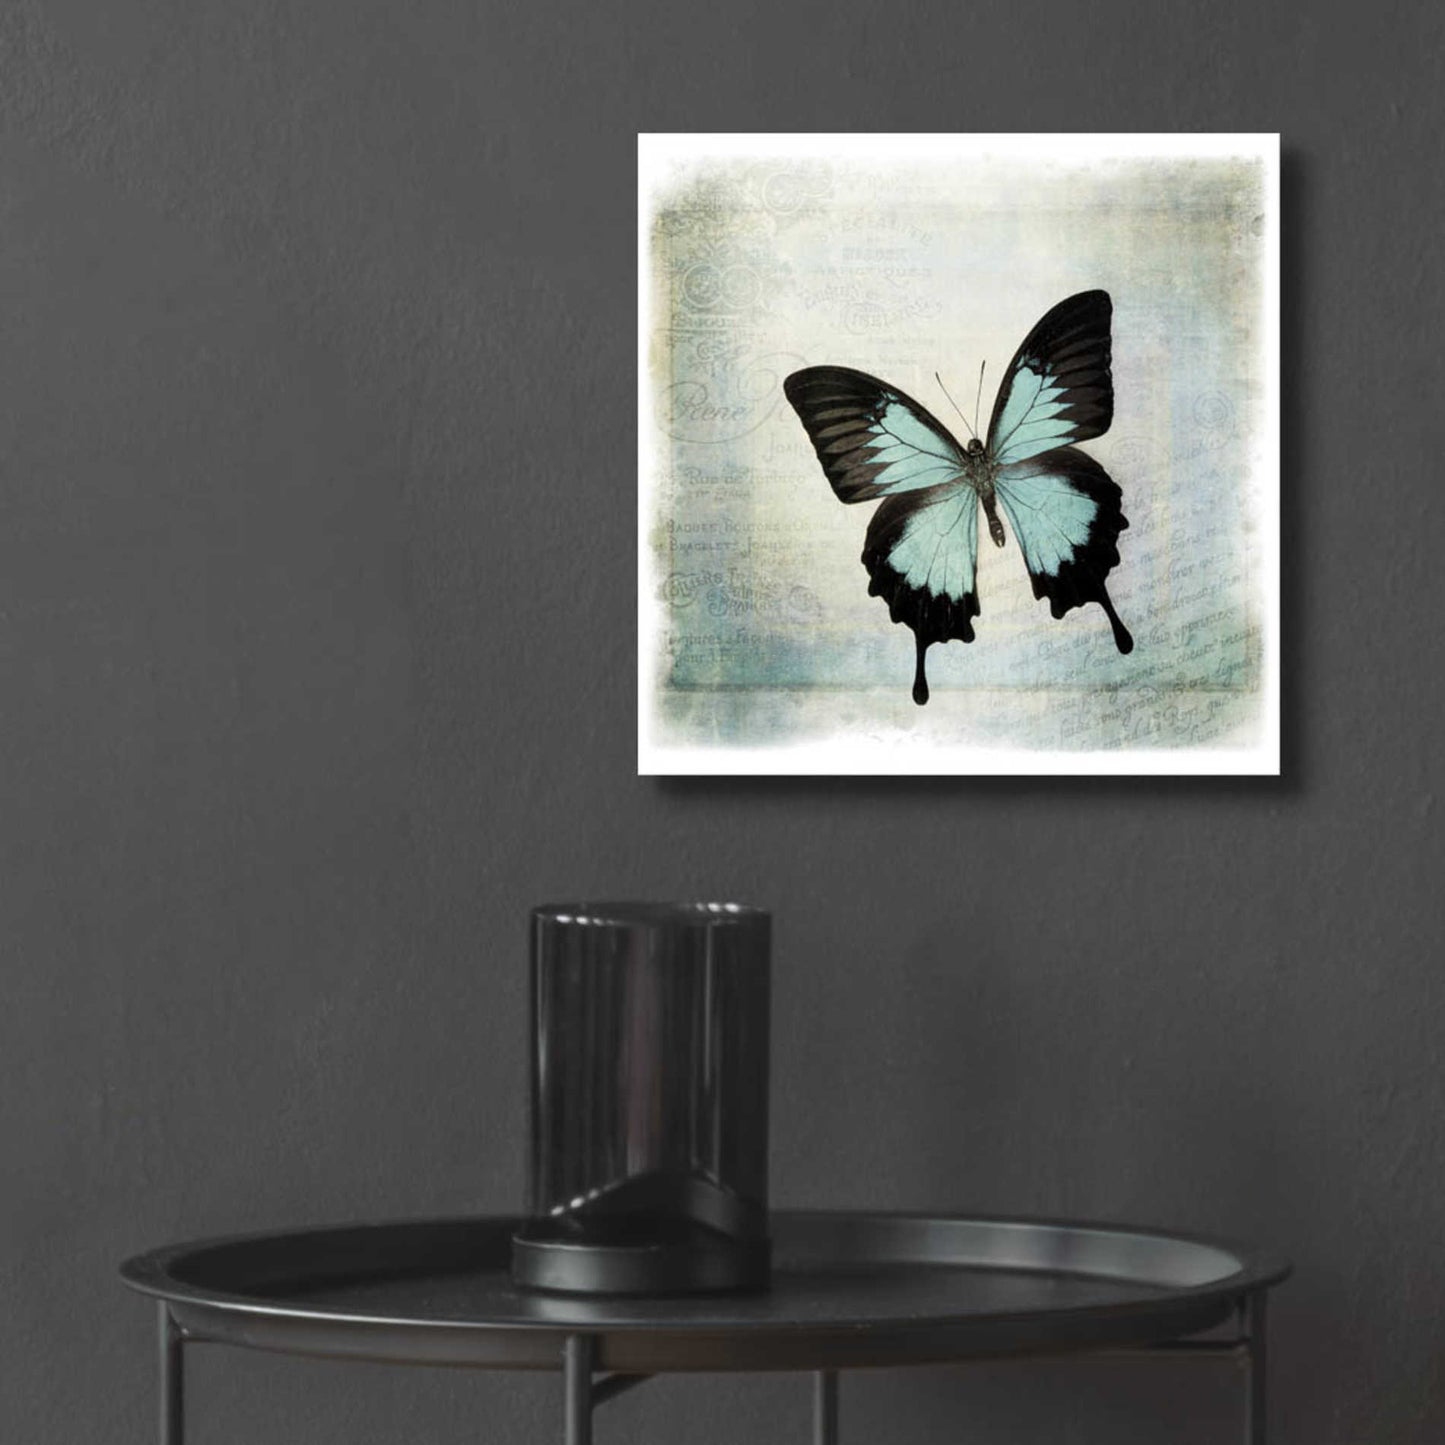 Epic Art 'Floating Butterfly III' by Debra Van Swearingen, Acrylic Glass Wall Art,12x12